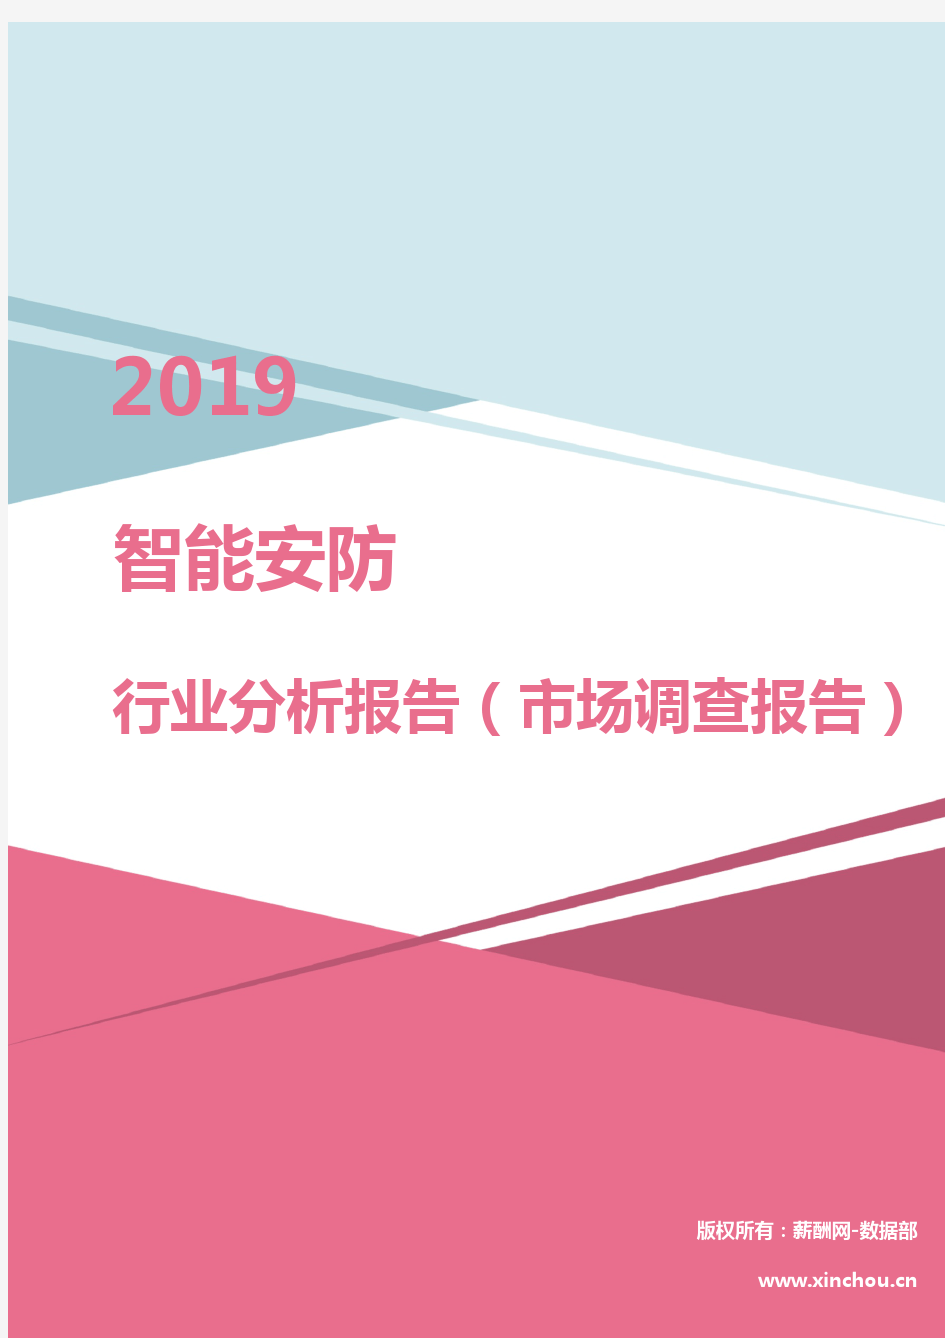 2019年智能安防行业分析报告(市场调查报告)